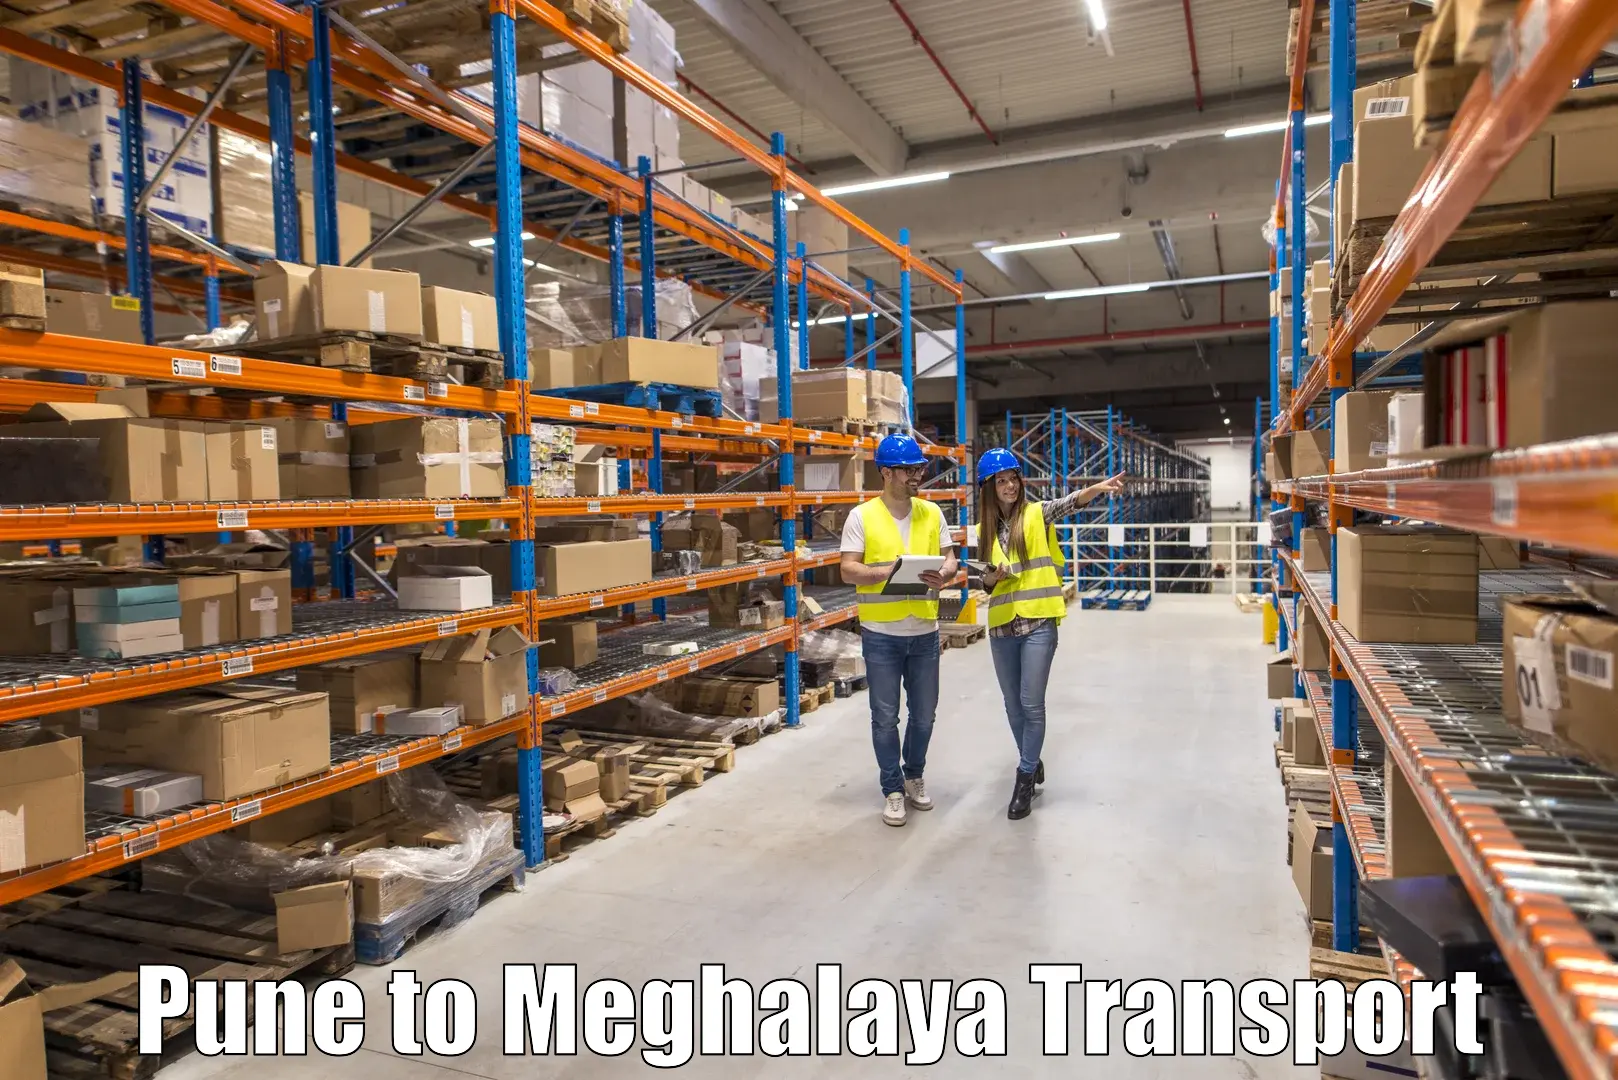 Cargo transportation services Pune to Dkhiah West